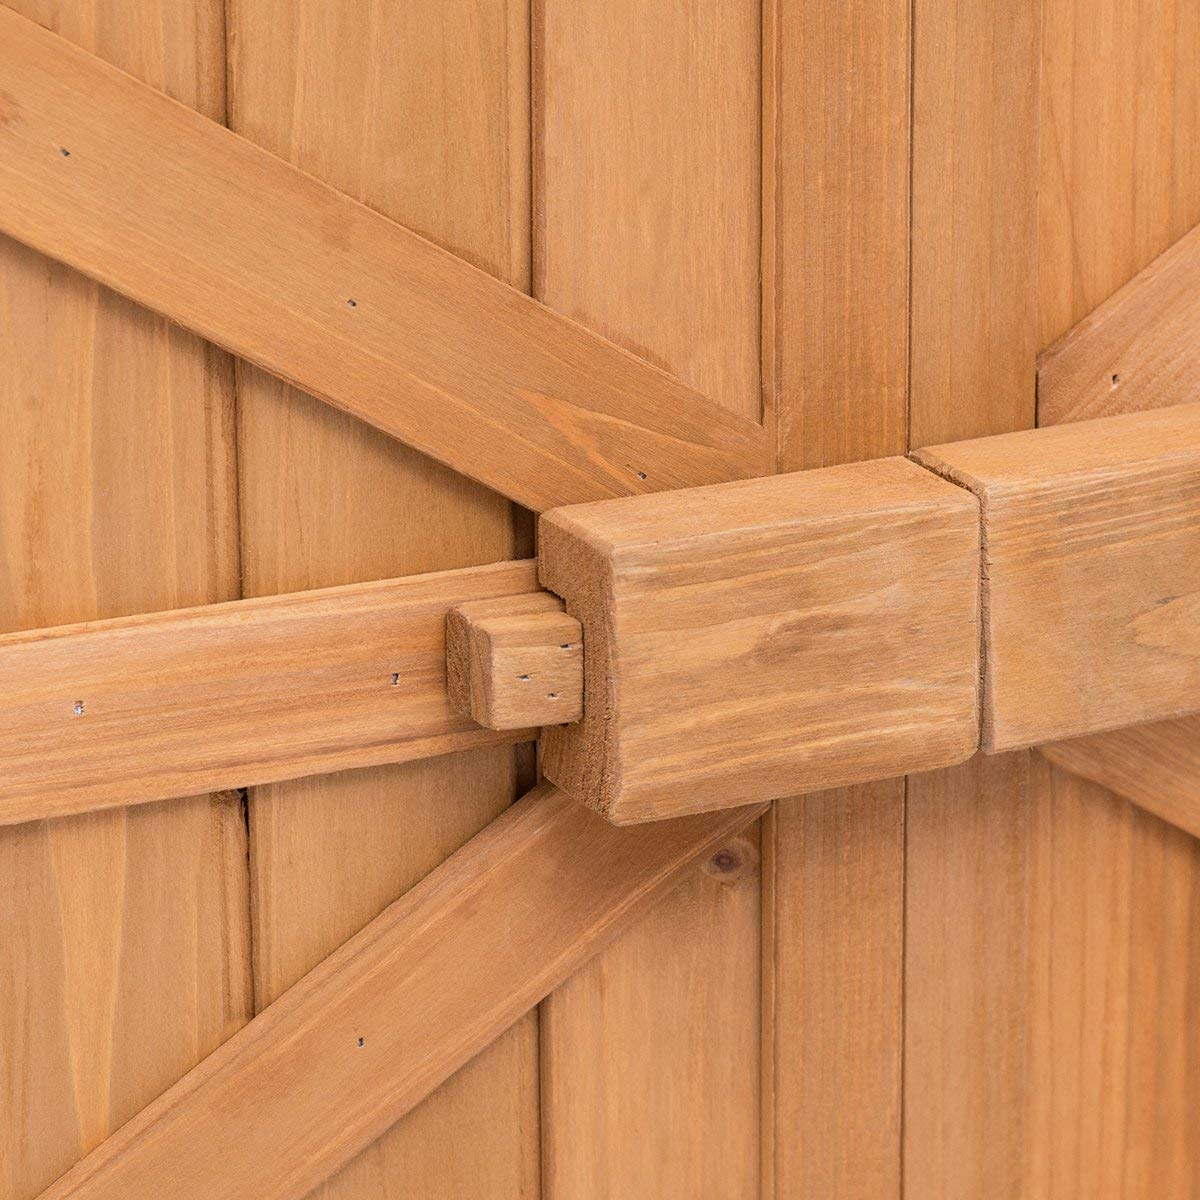 Goplus Wooden Garden Shed Outdoor Storage Cabinet Fir Wood Double Door –  Pete's Patio, Lawn & Garden